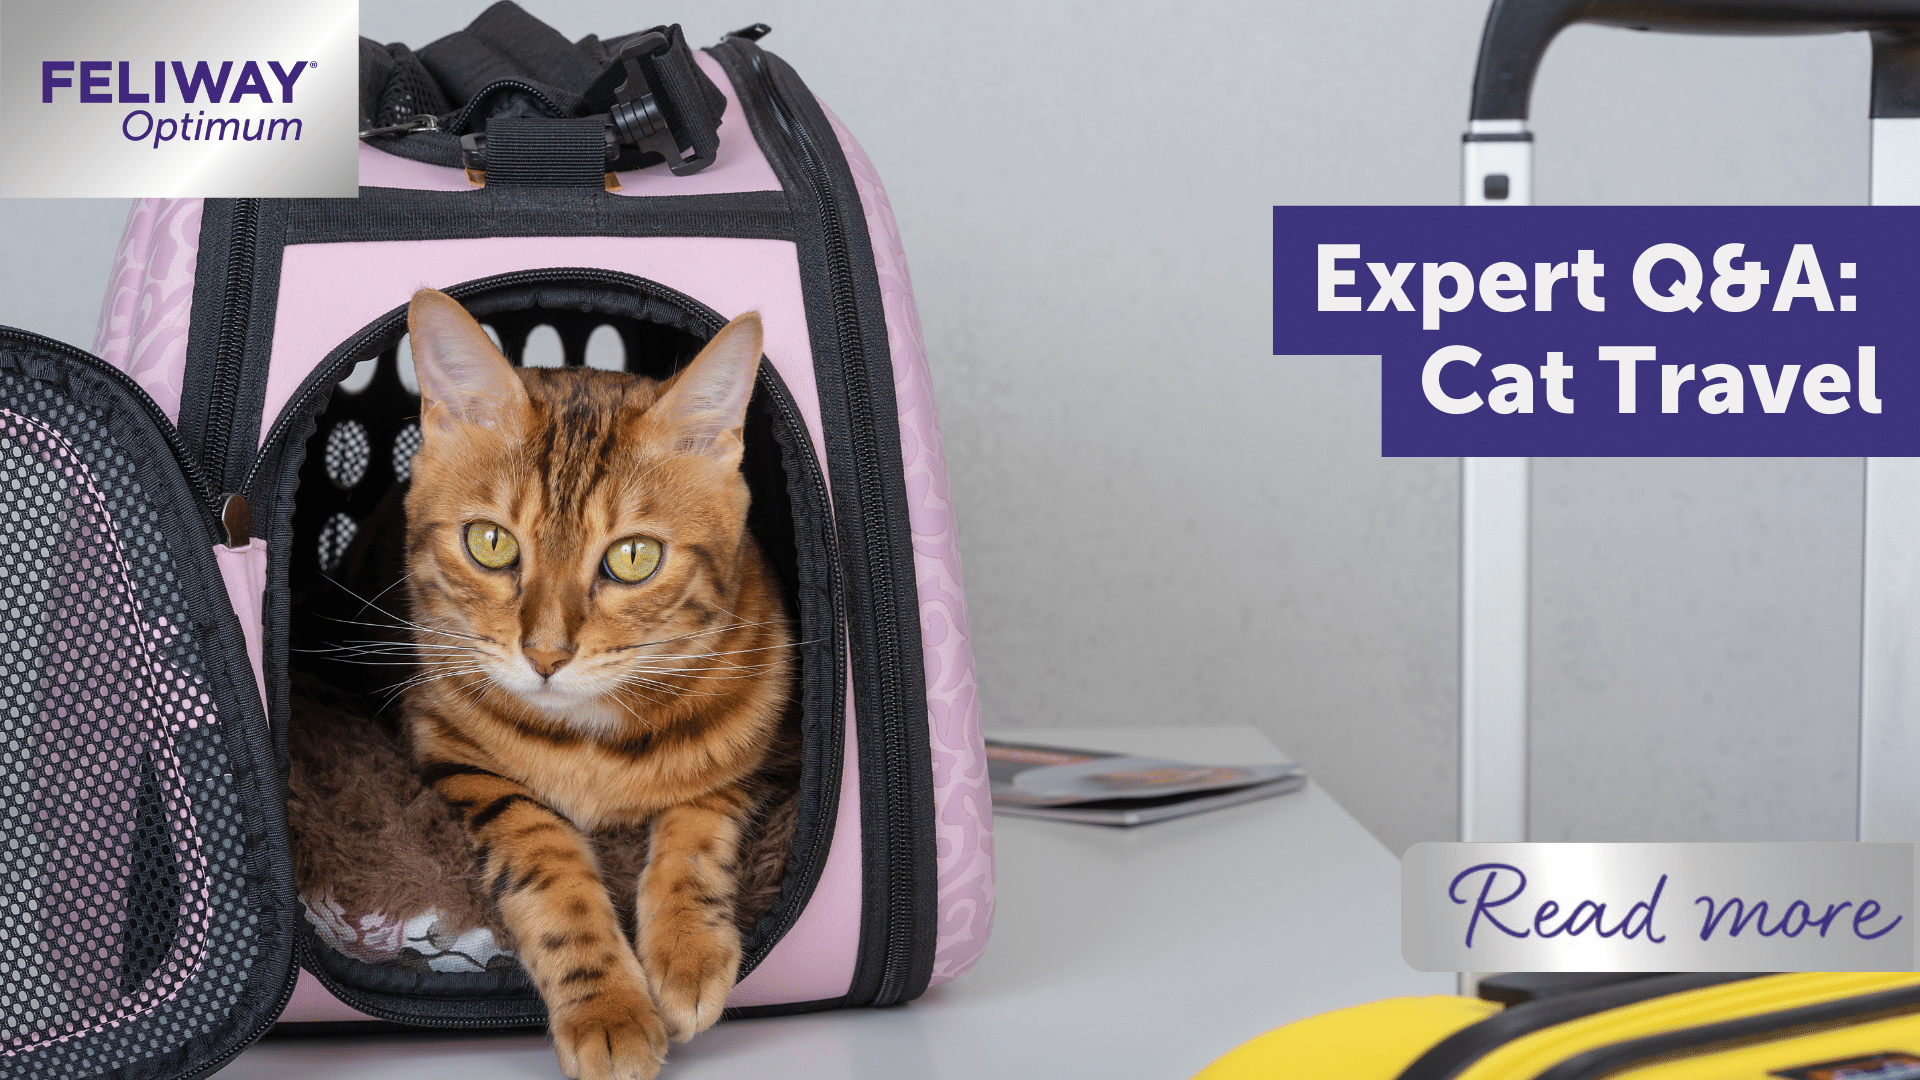 Expert Q&A: Cat Travel